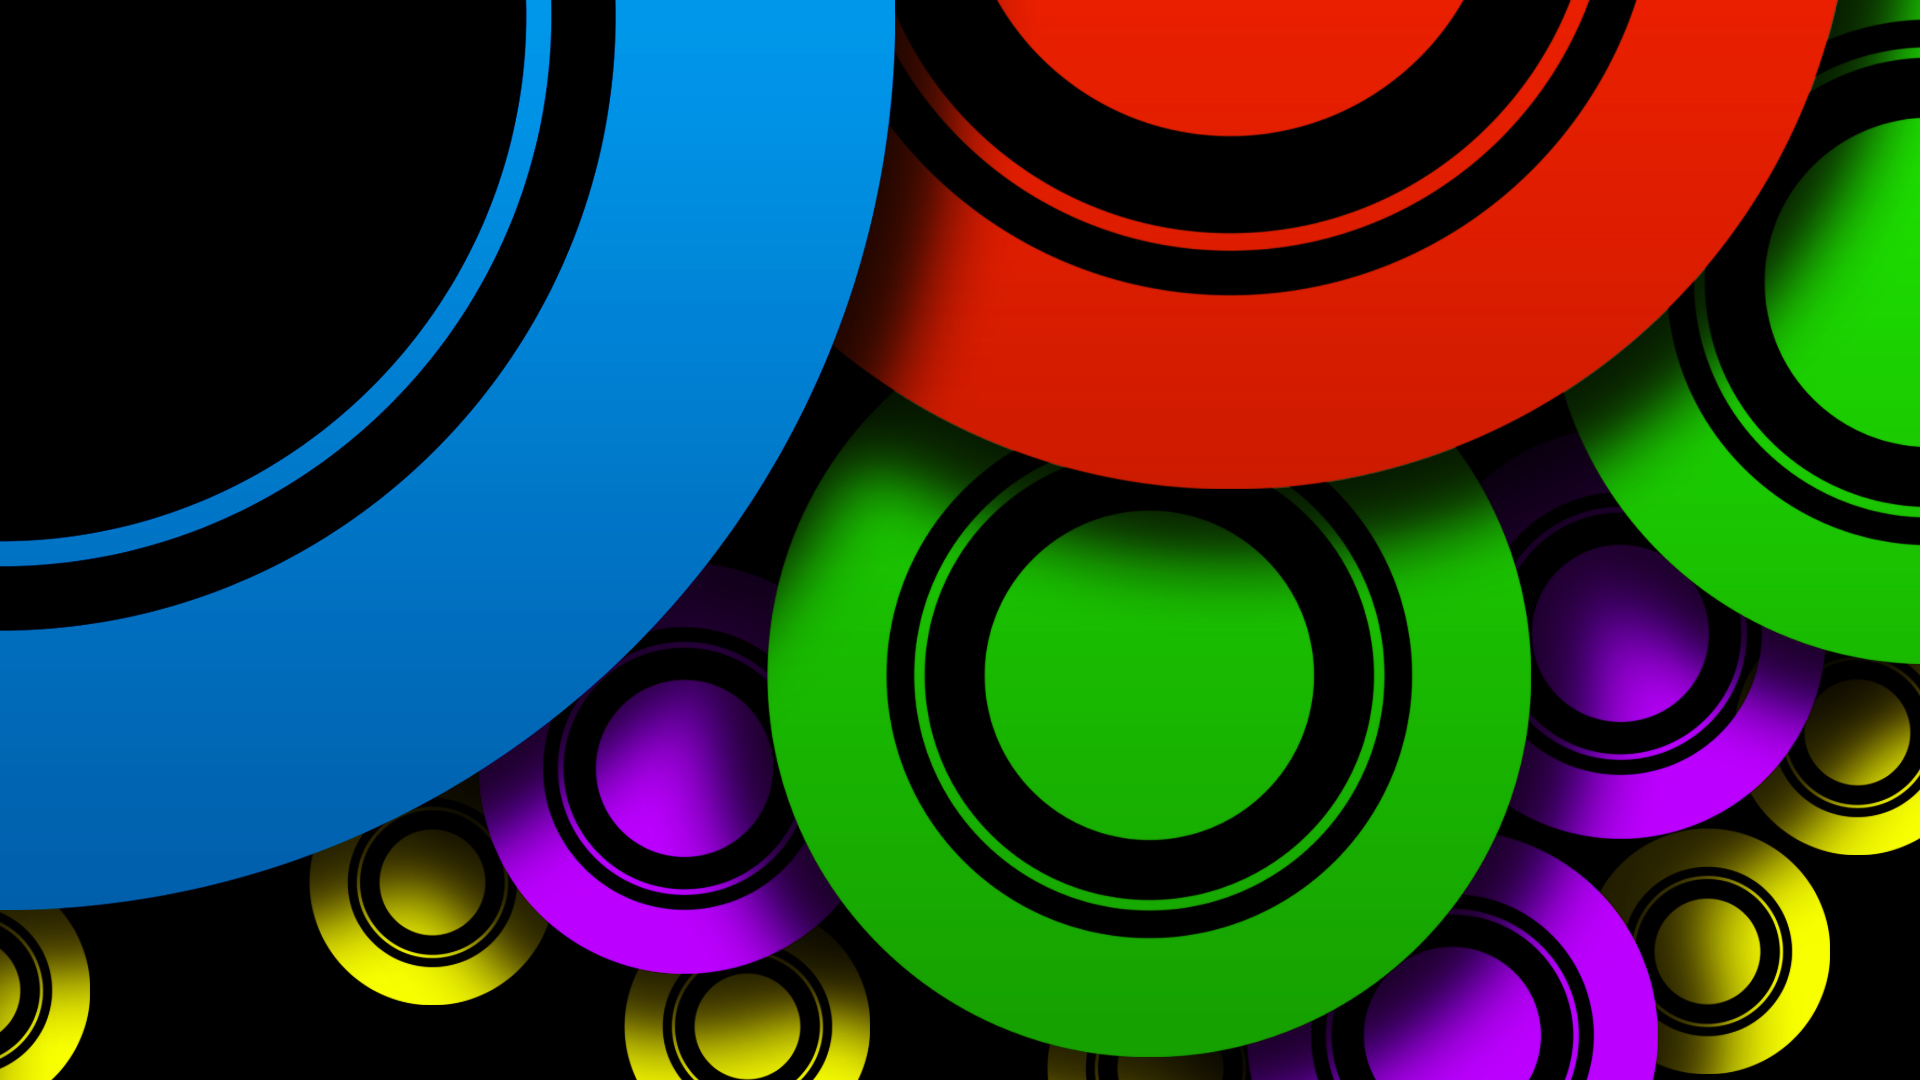 sfondo del cerchio,cerchio,colorfulness,disegno grafico,spirale,grafica